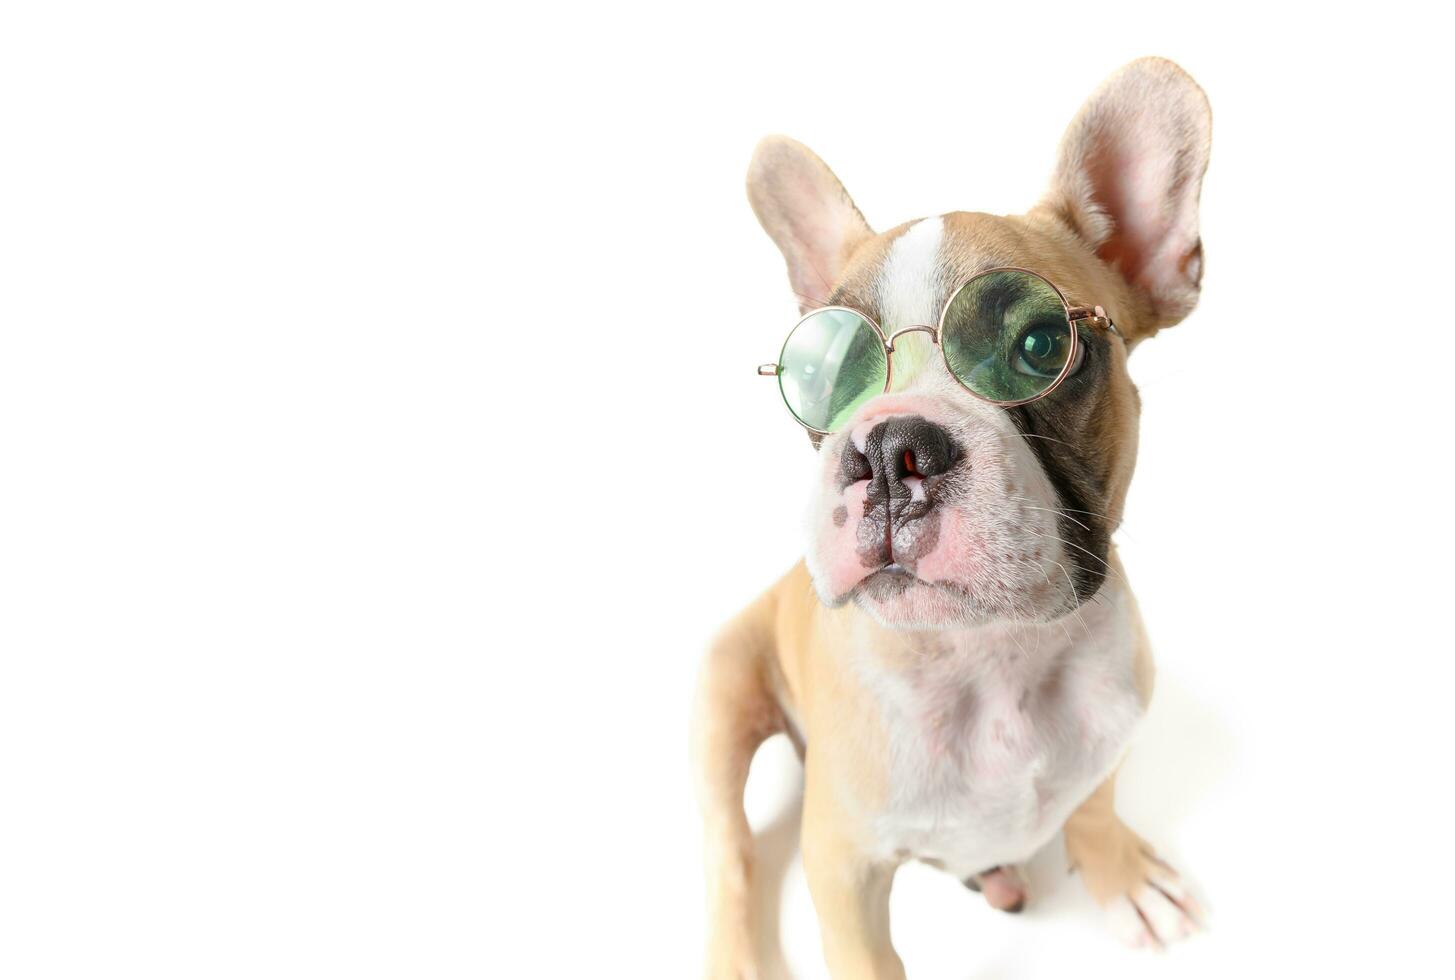 Frans bulldog slijtage zonnebril geïsoleerd foto